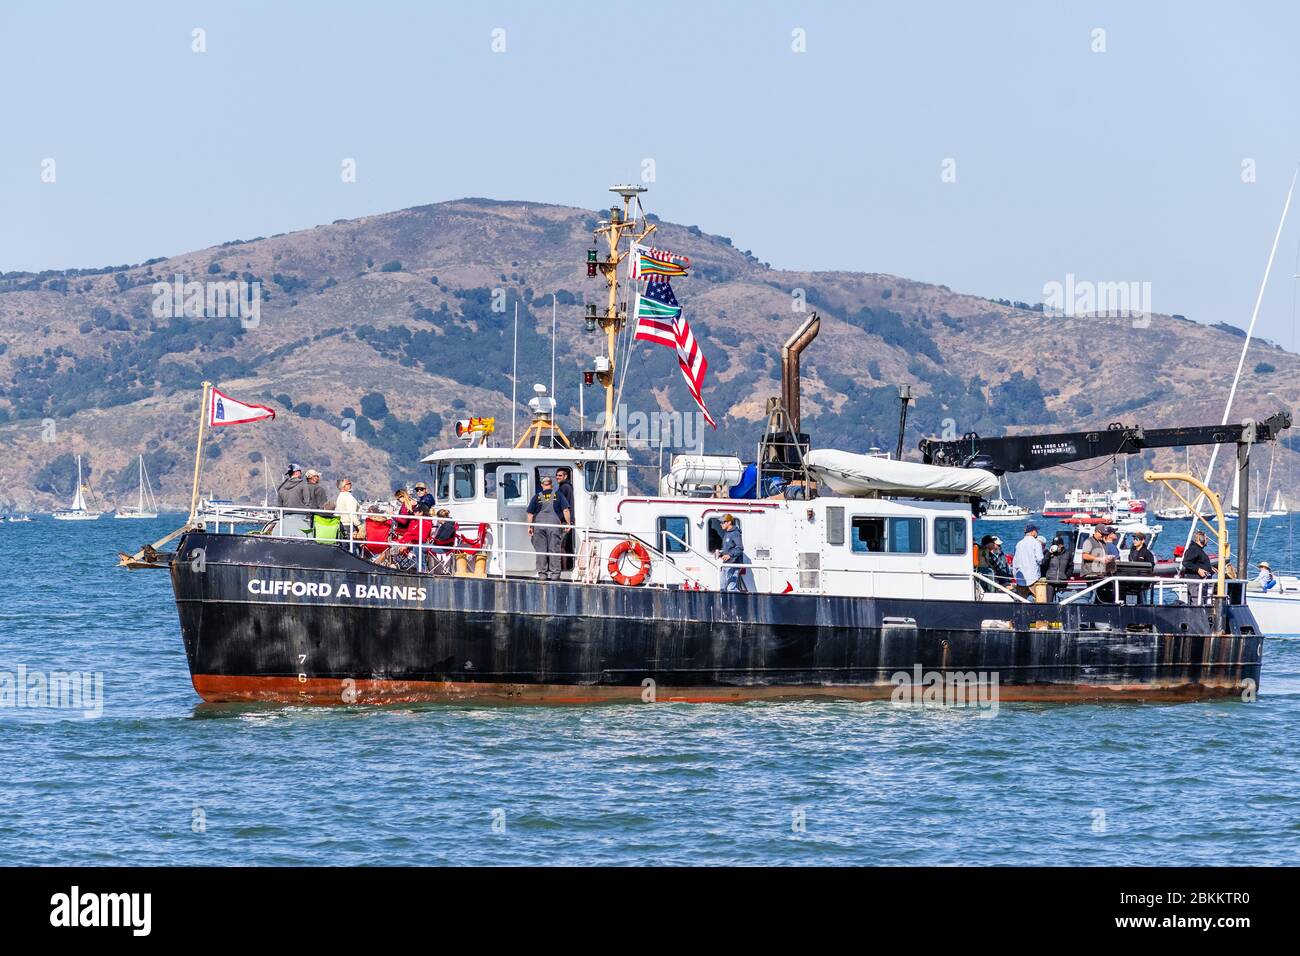 Okt 12, 2019 San Francisco / CA / USA - RV Clifford A. Barnes, ein Forschungsschiff, fährt in der Bucht von San Francisco; Angel Island sichtbar im Hintergrund Stockfoto